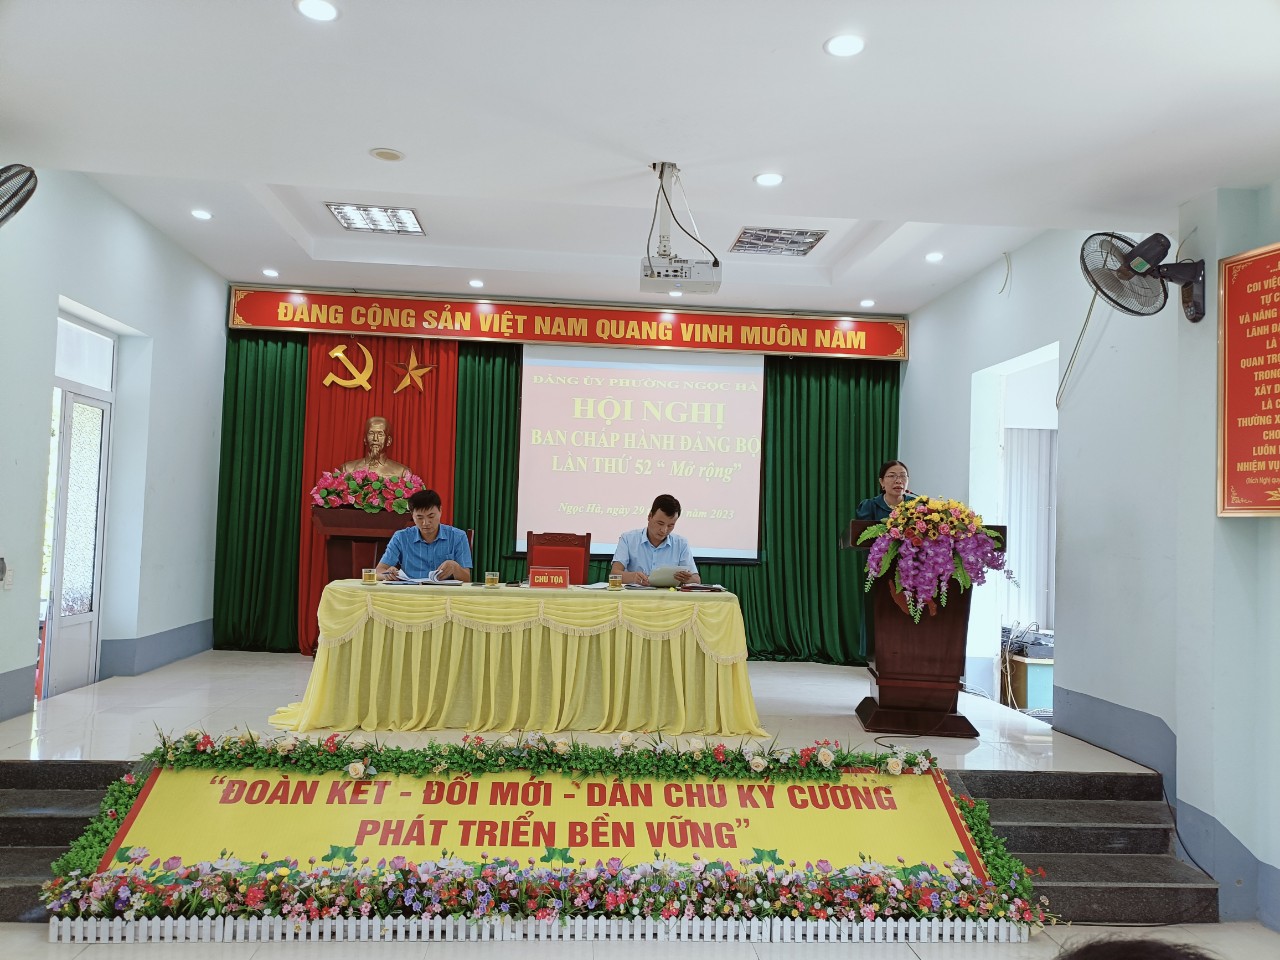 Đảng bộ phường Ngọc Hà tổ chức Hội nghị Ban chấp hành lần thứ 52 (mở rộng)